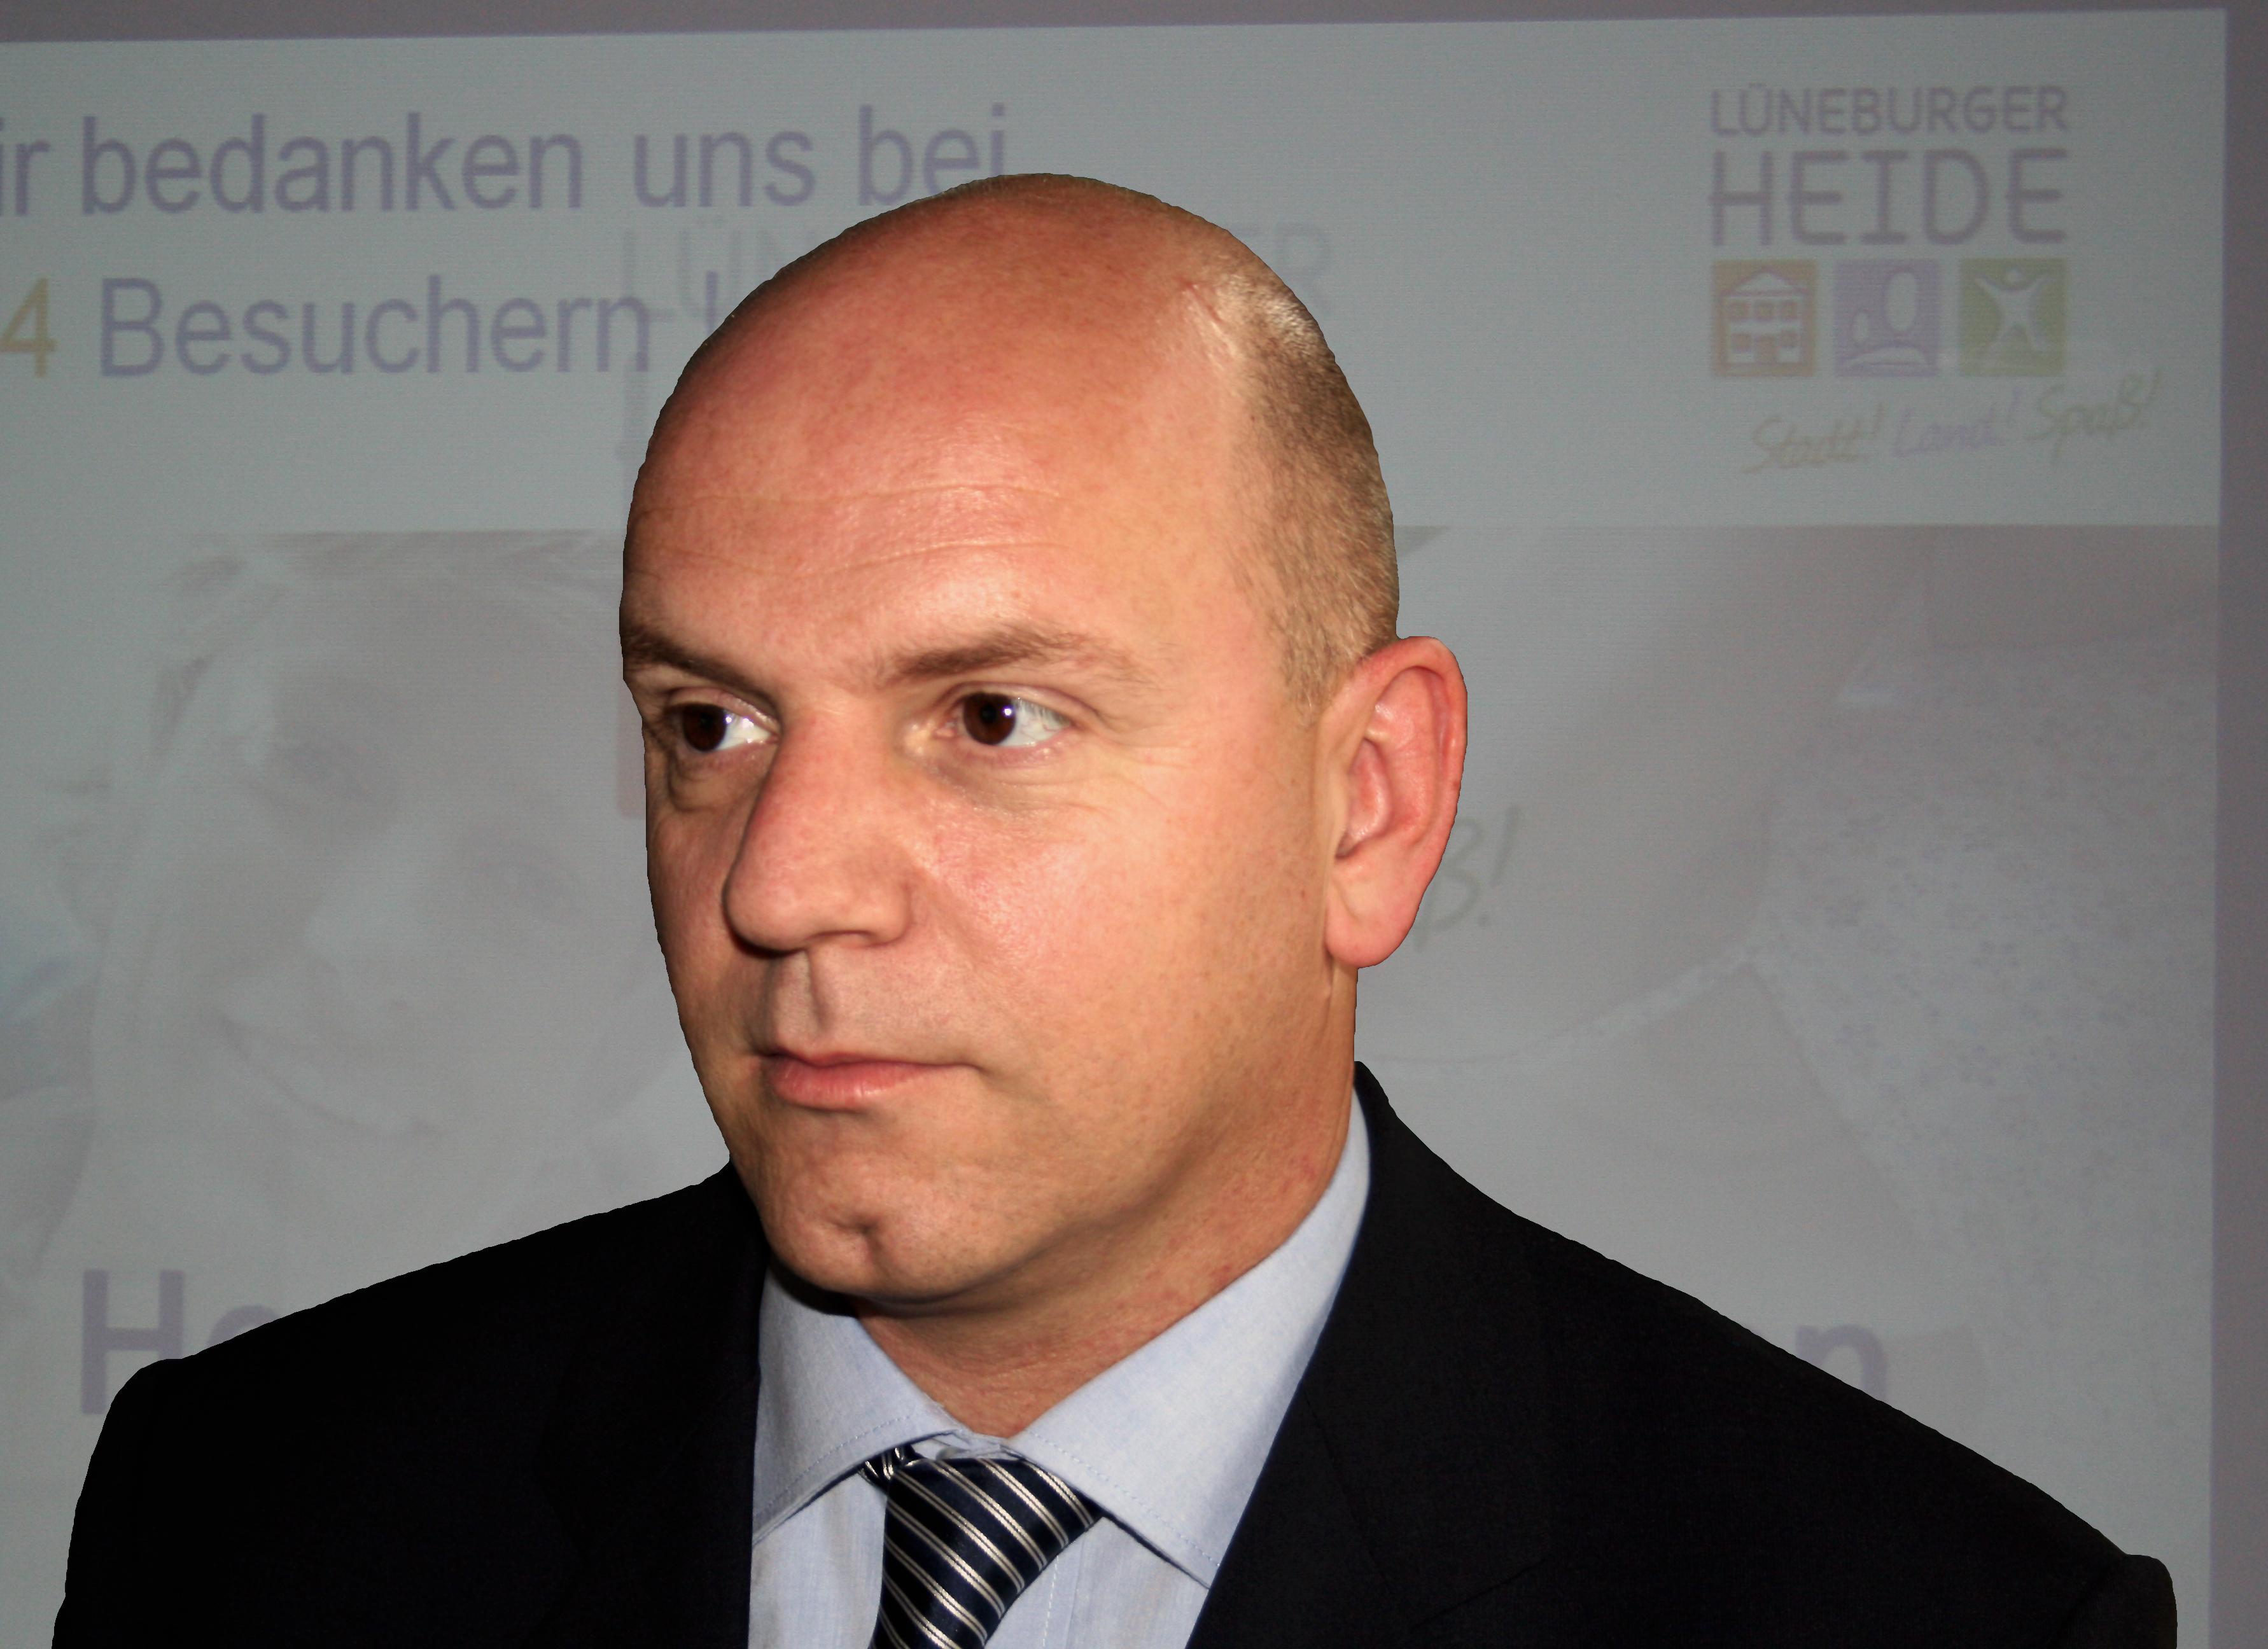 Ulrich von dem Bruch, Geschäftsführer der Lüneburger Heide GmbH